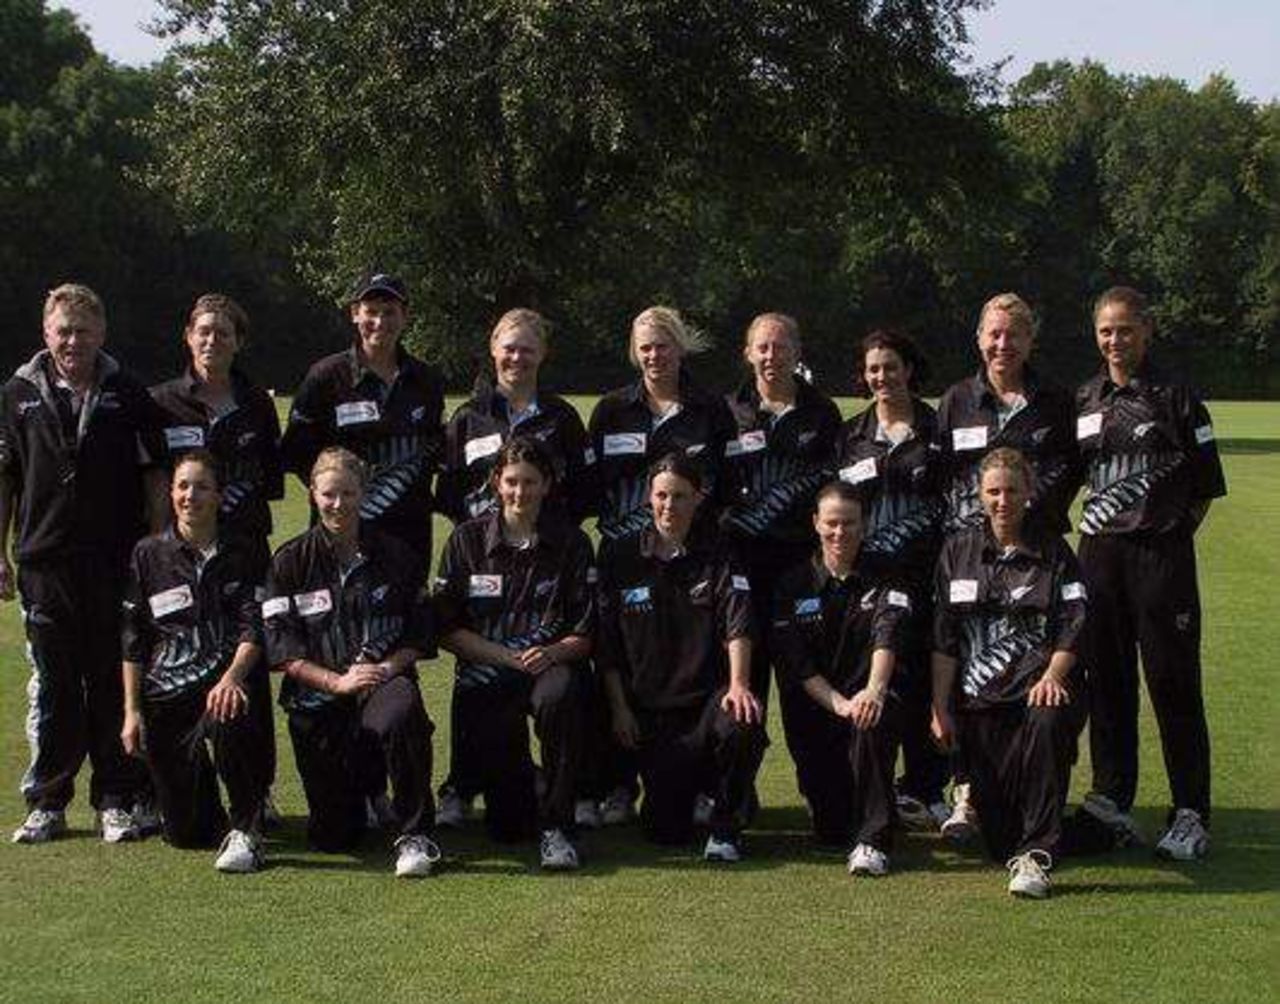 New Zealand team for the Women's ODI against Netherlands, 26 June 2002